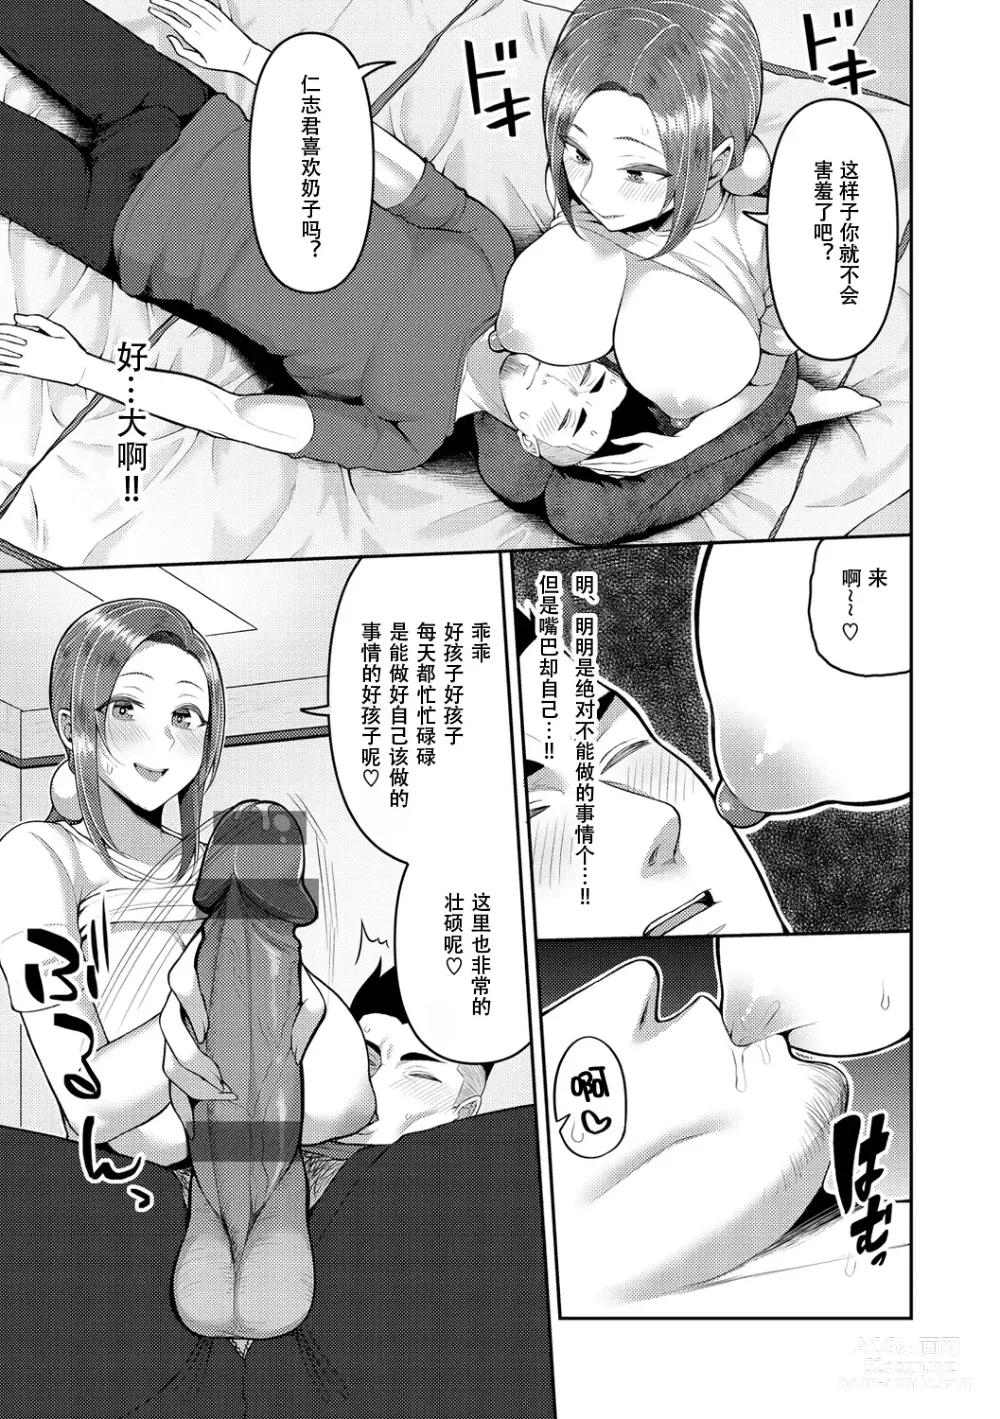 Page 11 of manga Amaete Hoshii no - I want you to spoil me